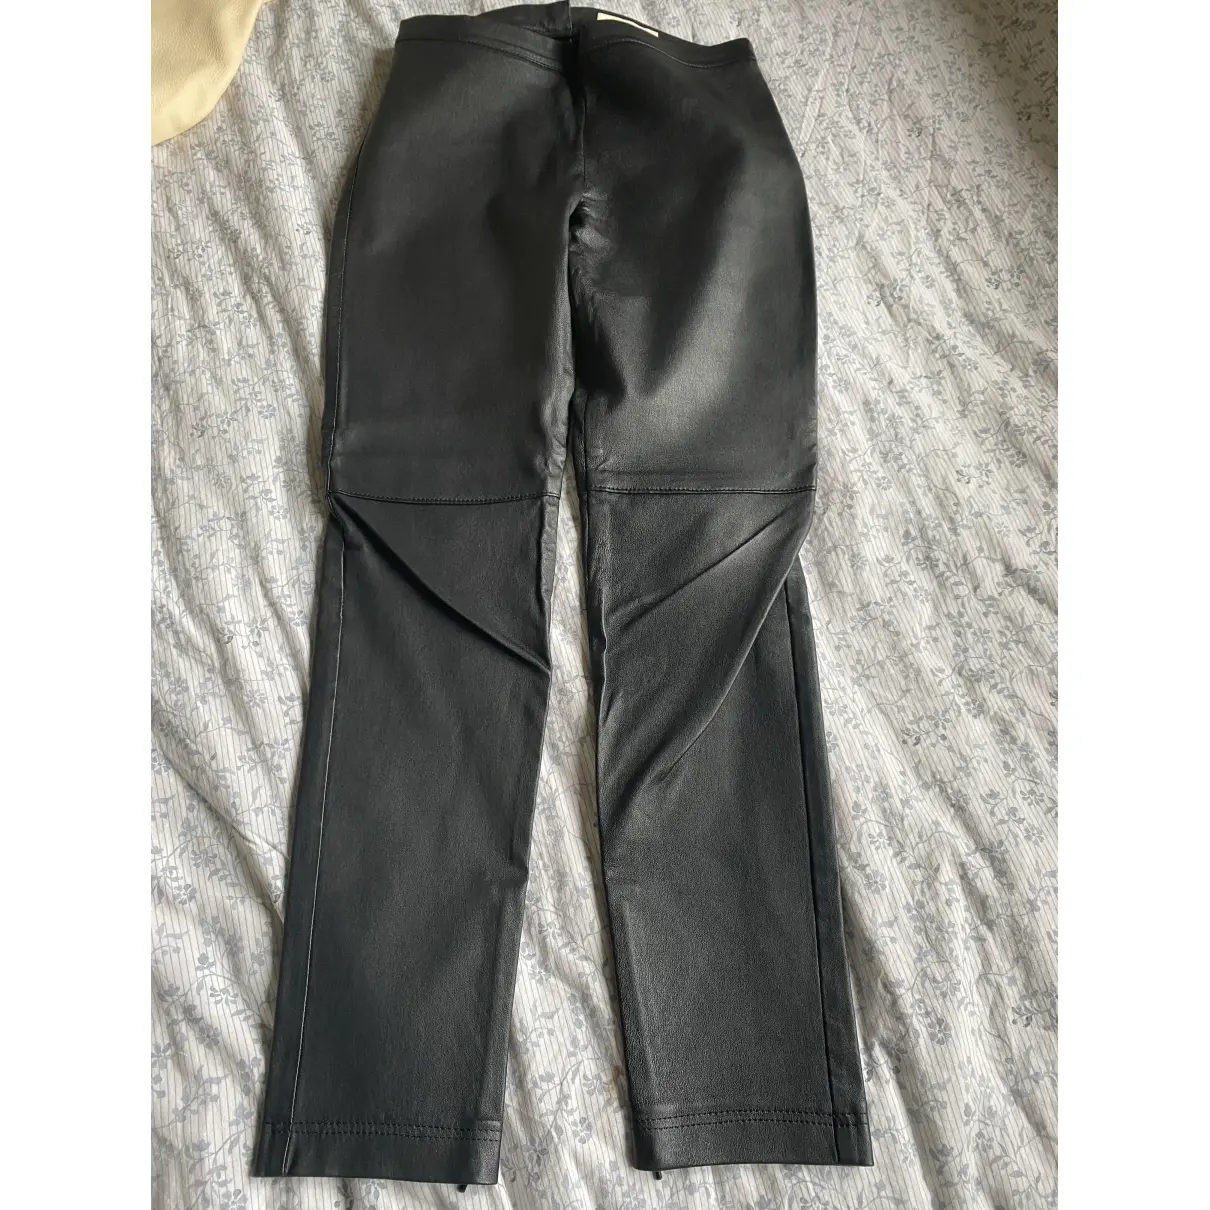 Buy Zapa Leather slim pants online